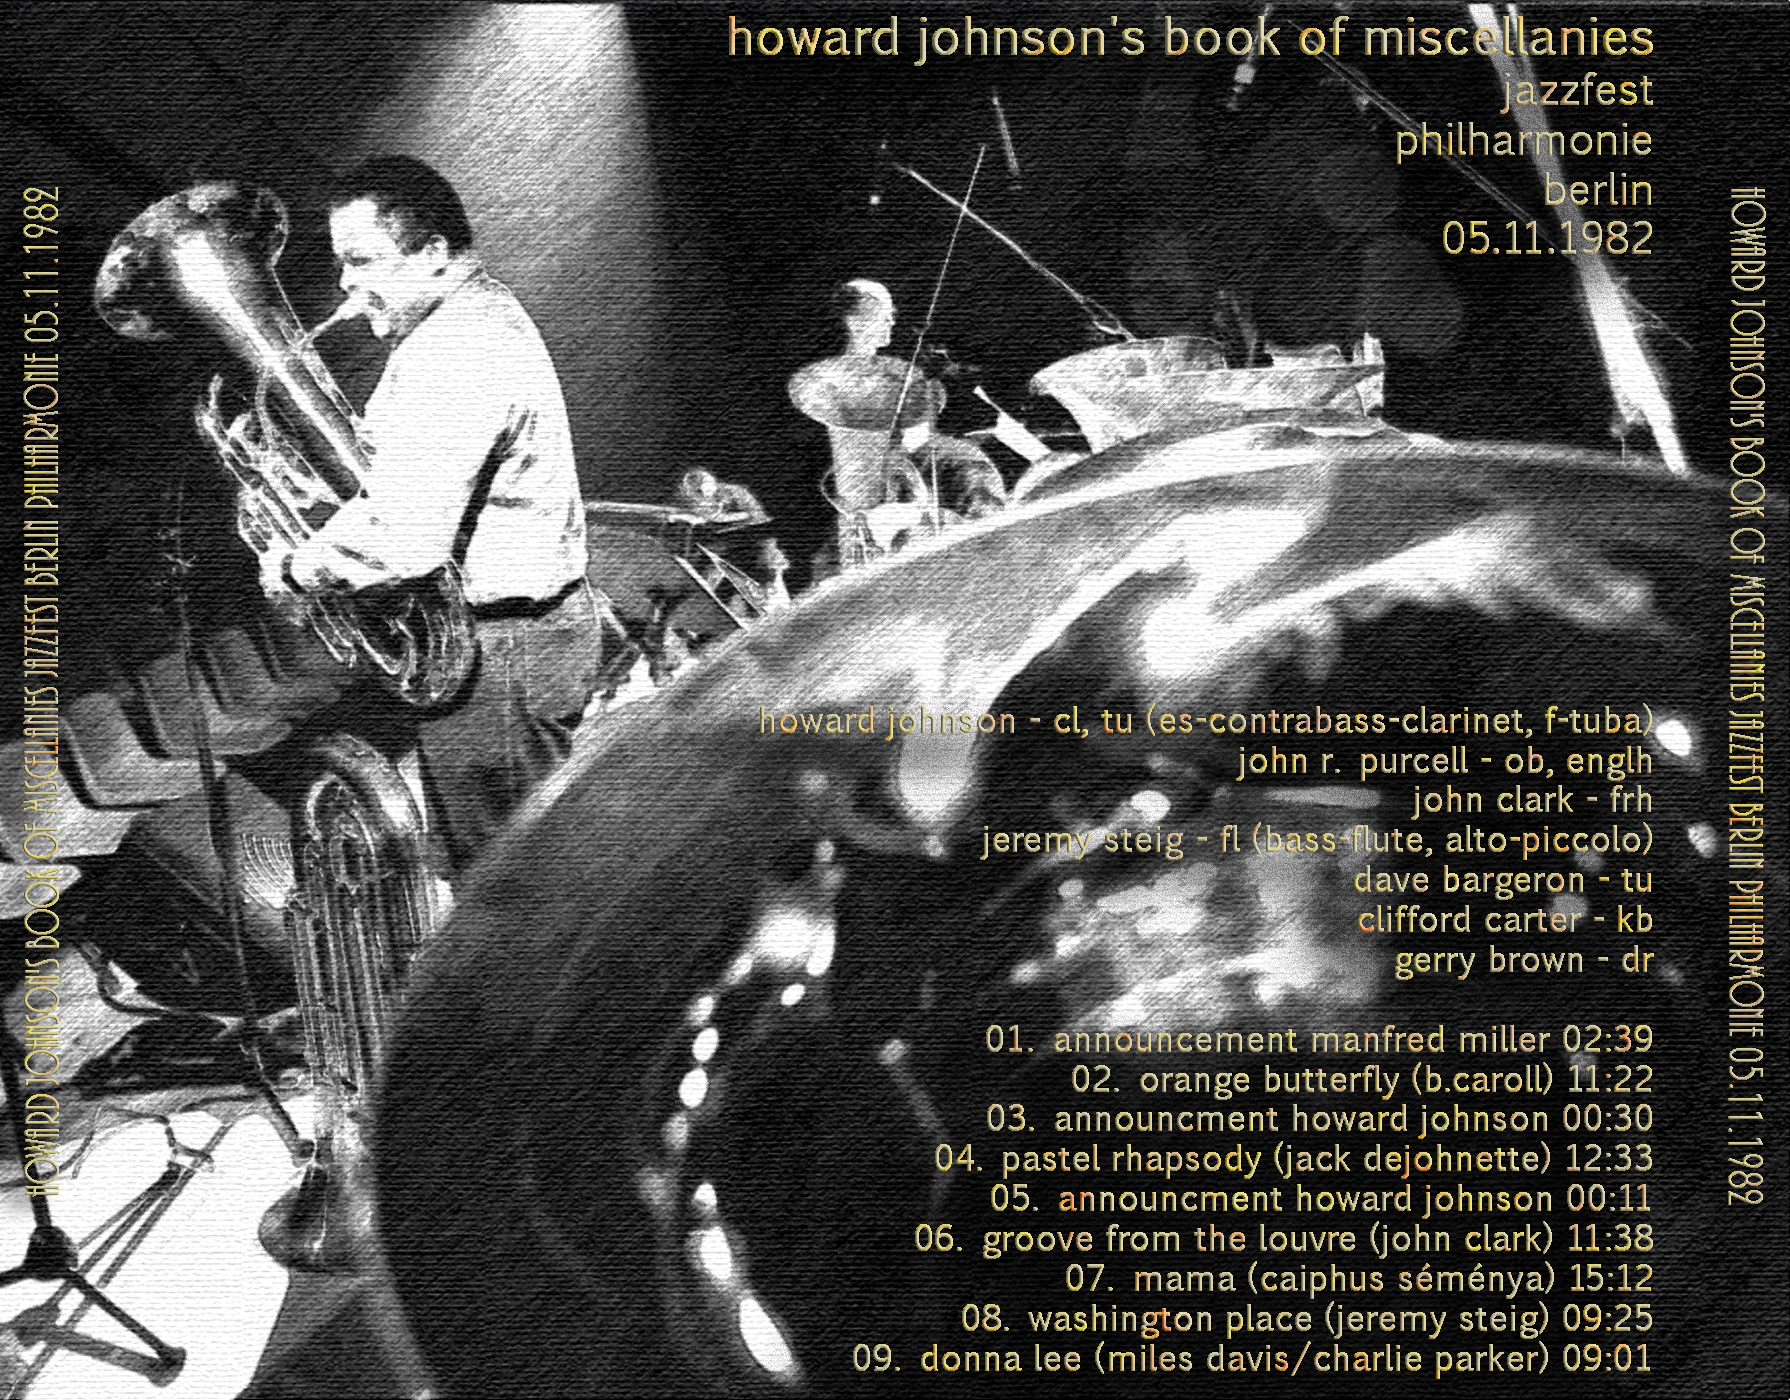 HowardJohnsonsBookOfMiscellanies1982-11-05PhilharmonieBerlinGermany (2).jpg